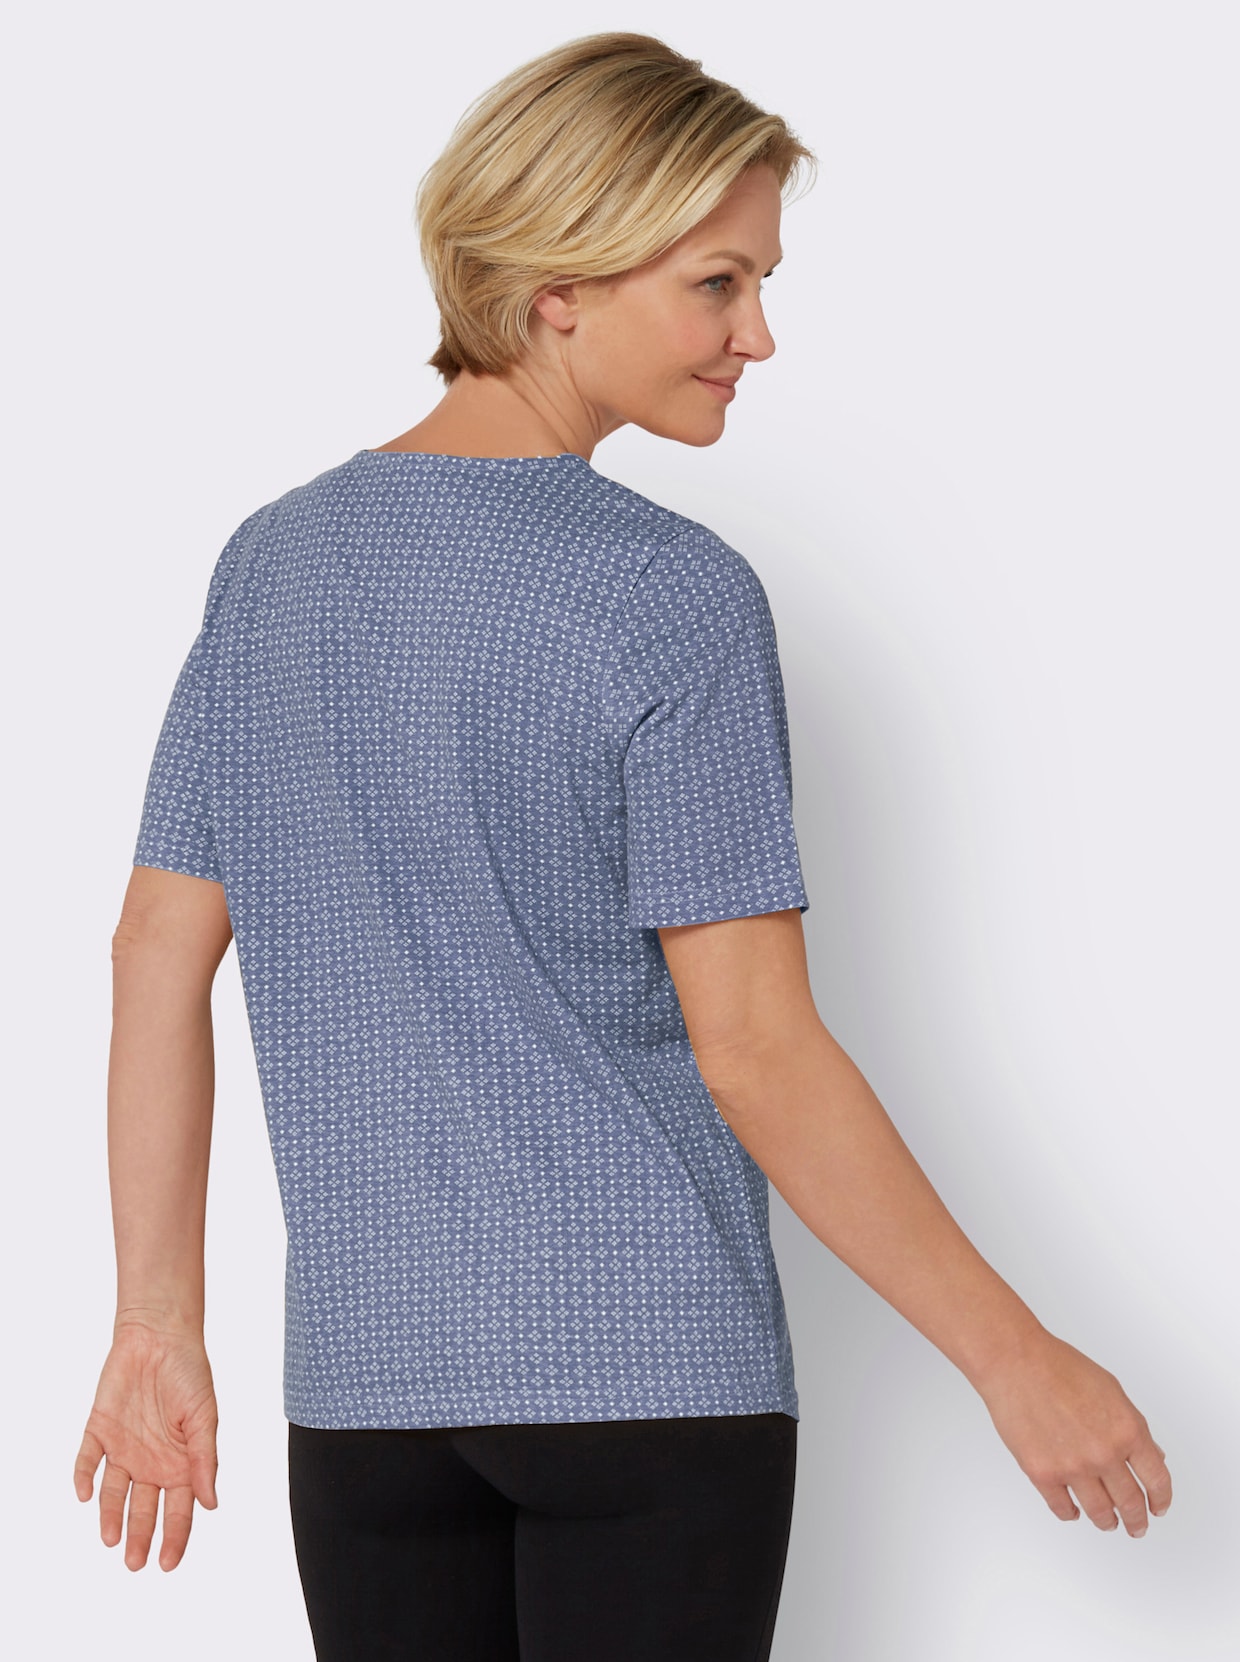 Tričko s okrúhlym výstrihom - Modrosivo-biela potlač